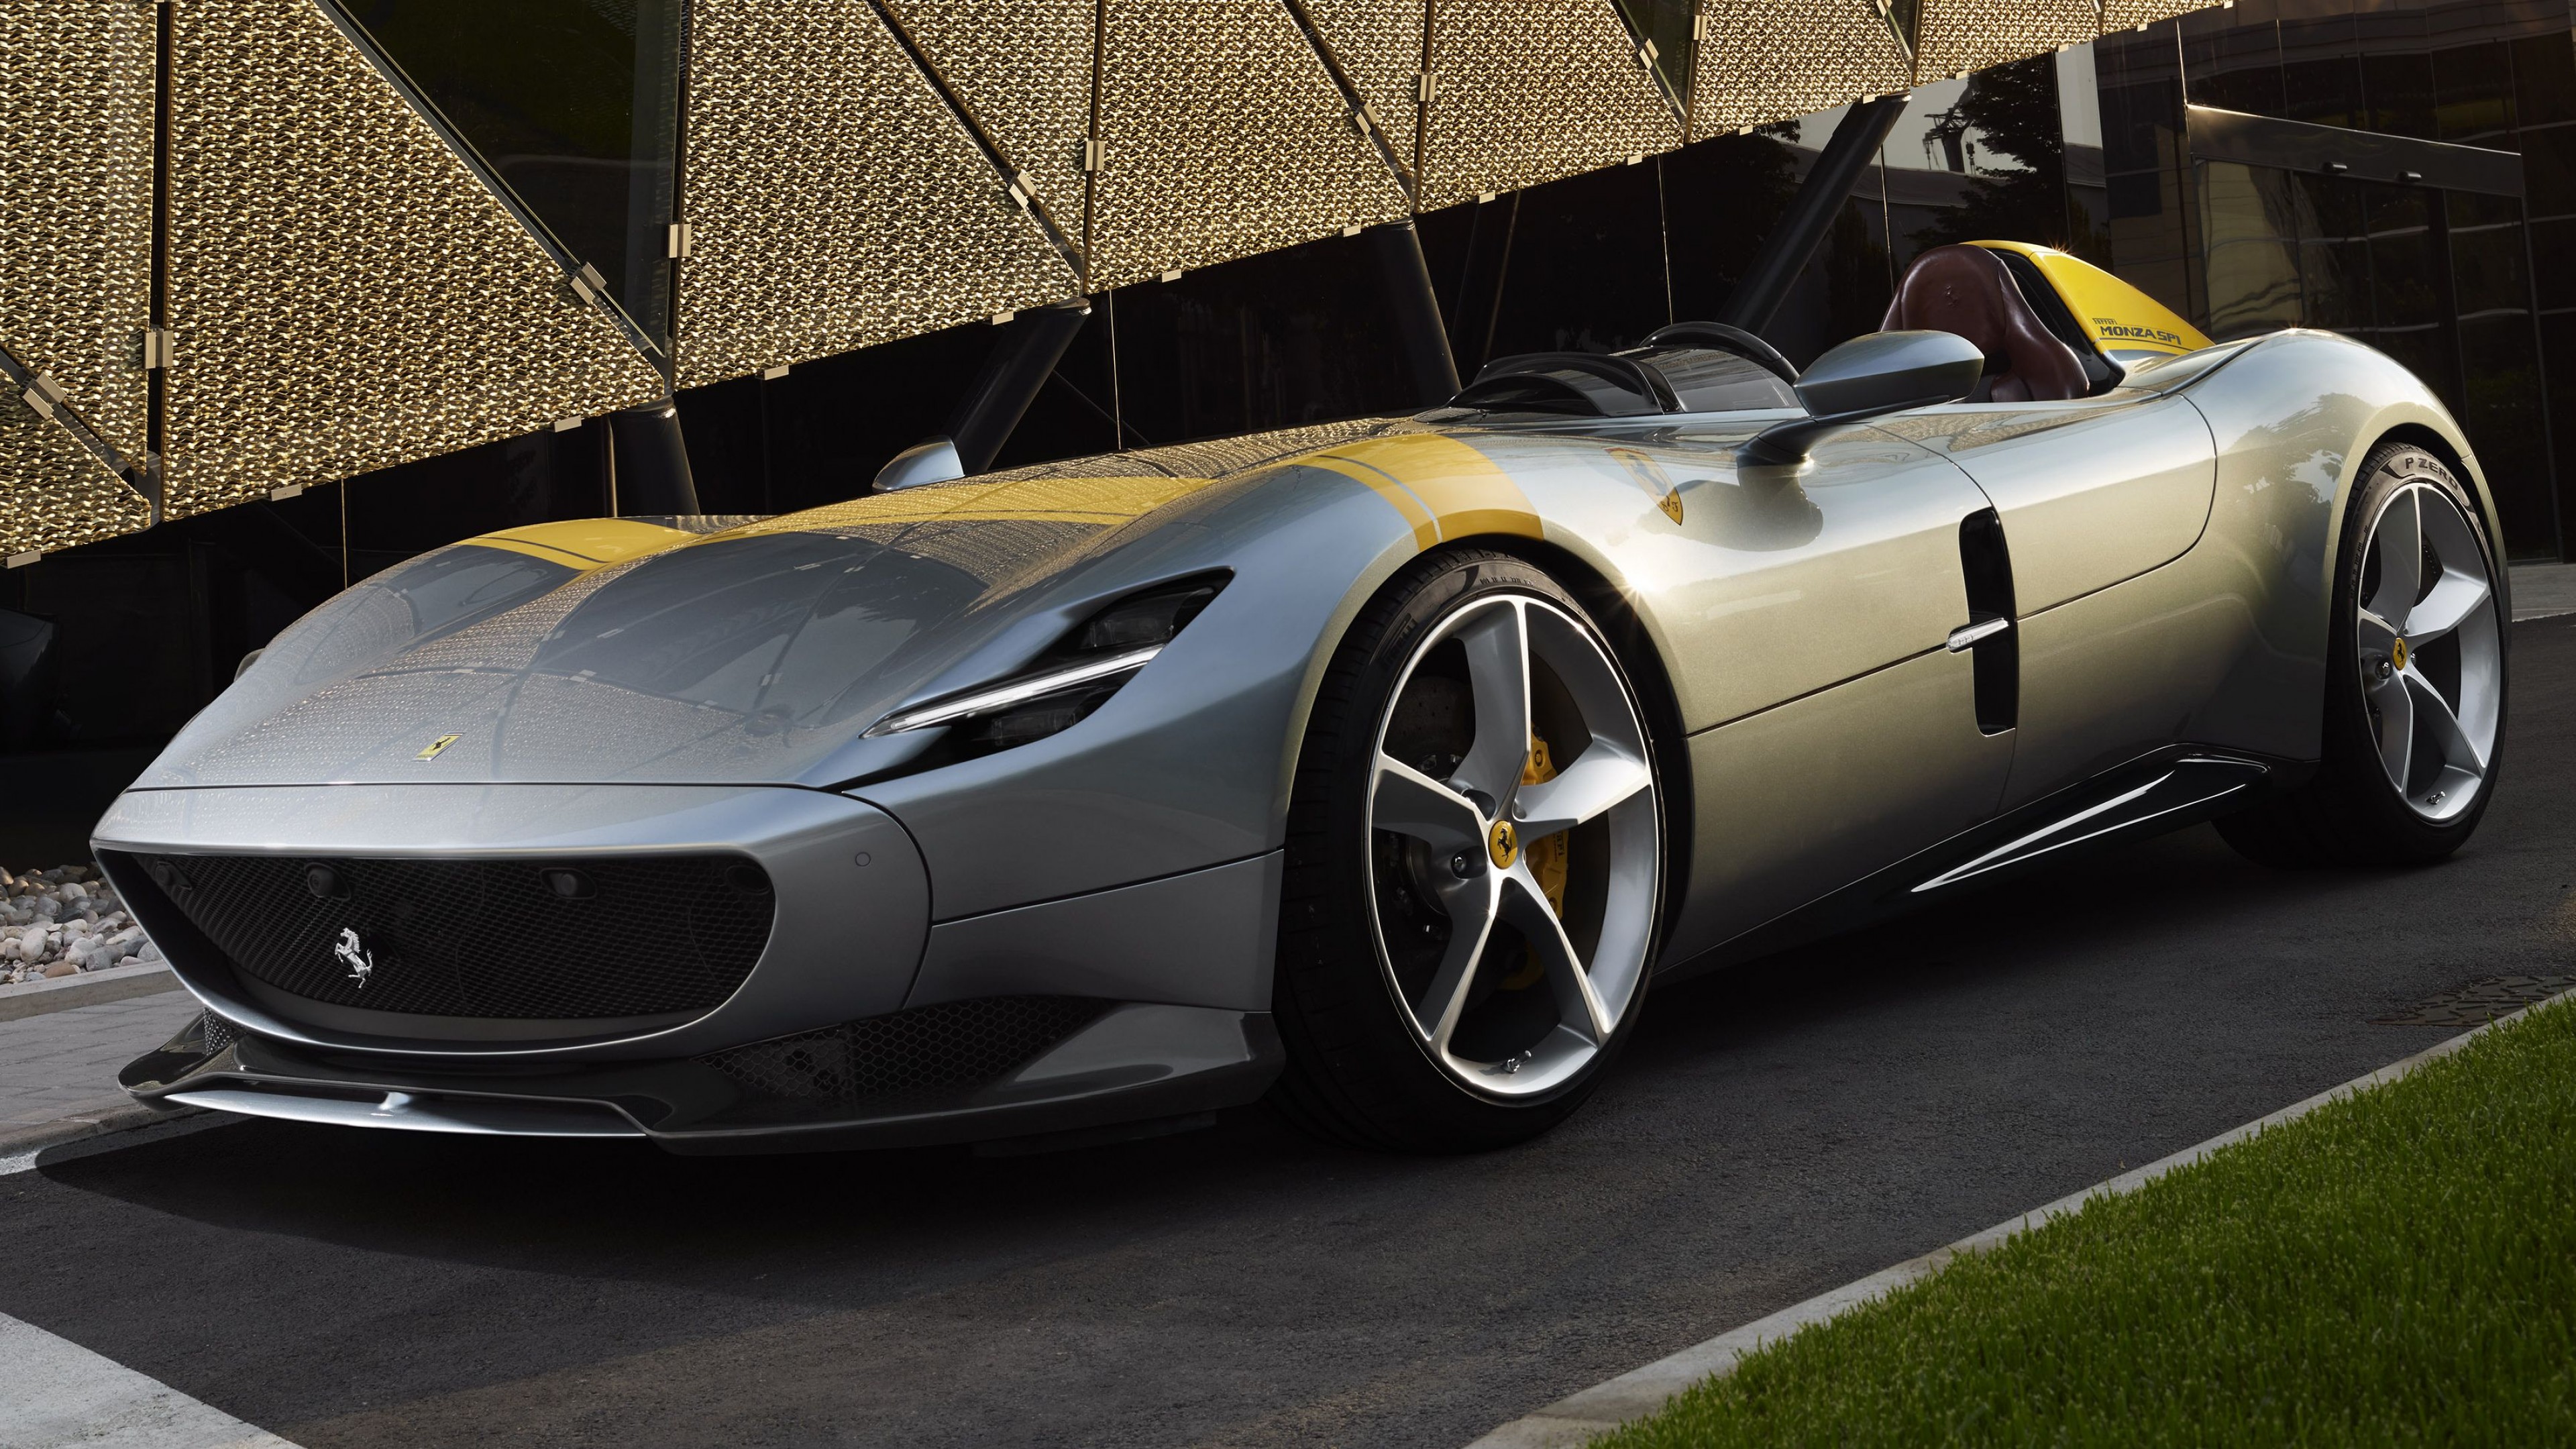 Hd Resolution - Ferrari Monza Sp 1 , HD Wallpaper & Backgrounds